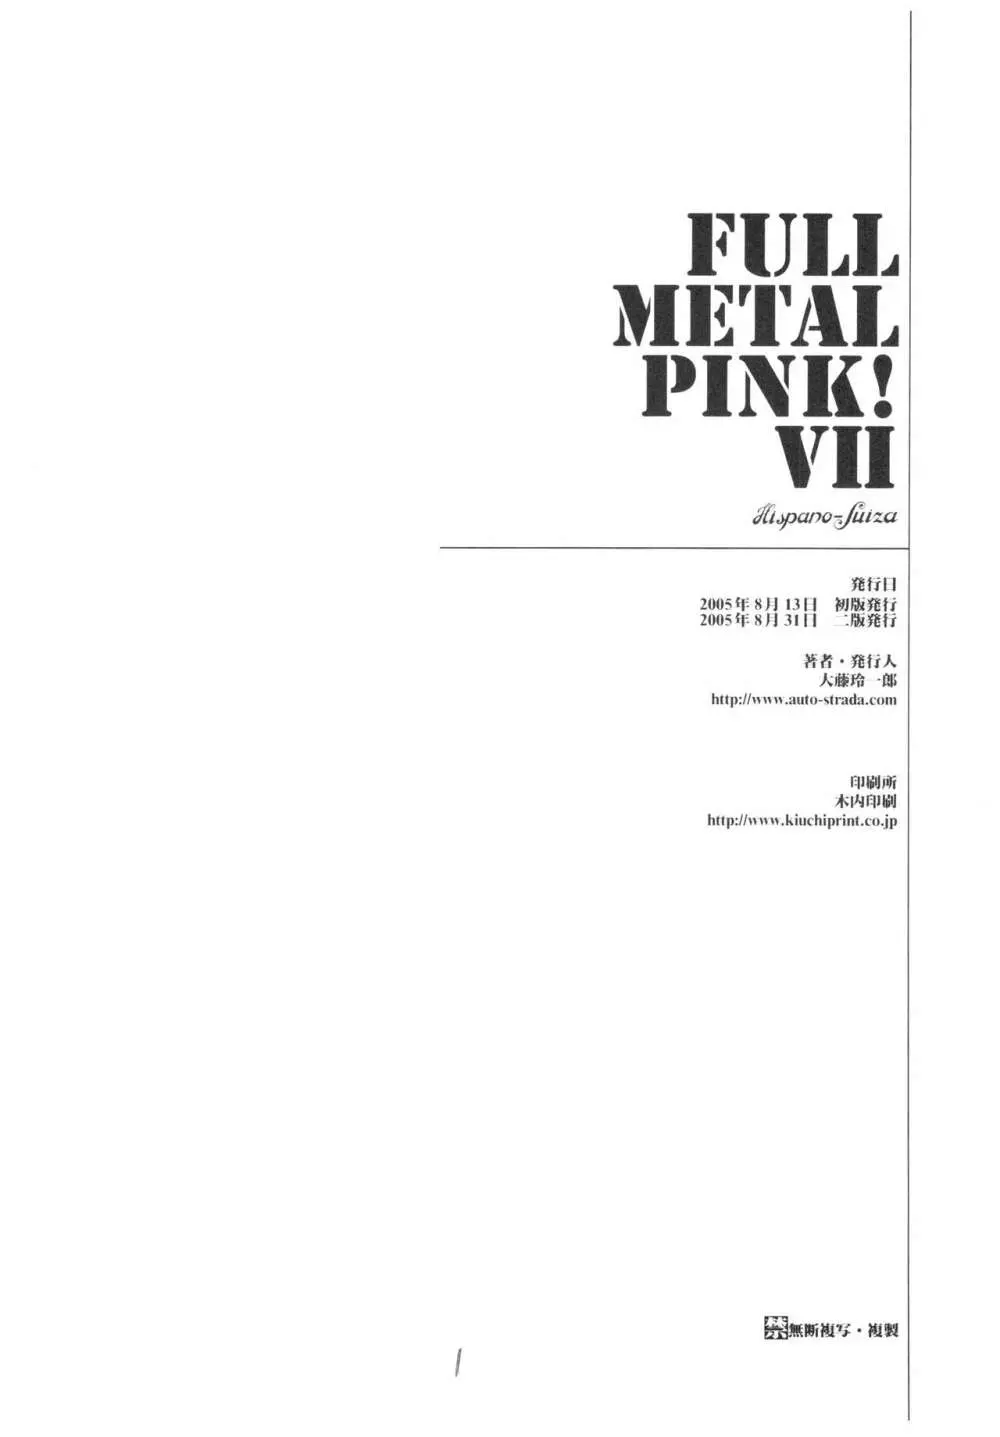 Full Metal Pink! VII 29ページ